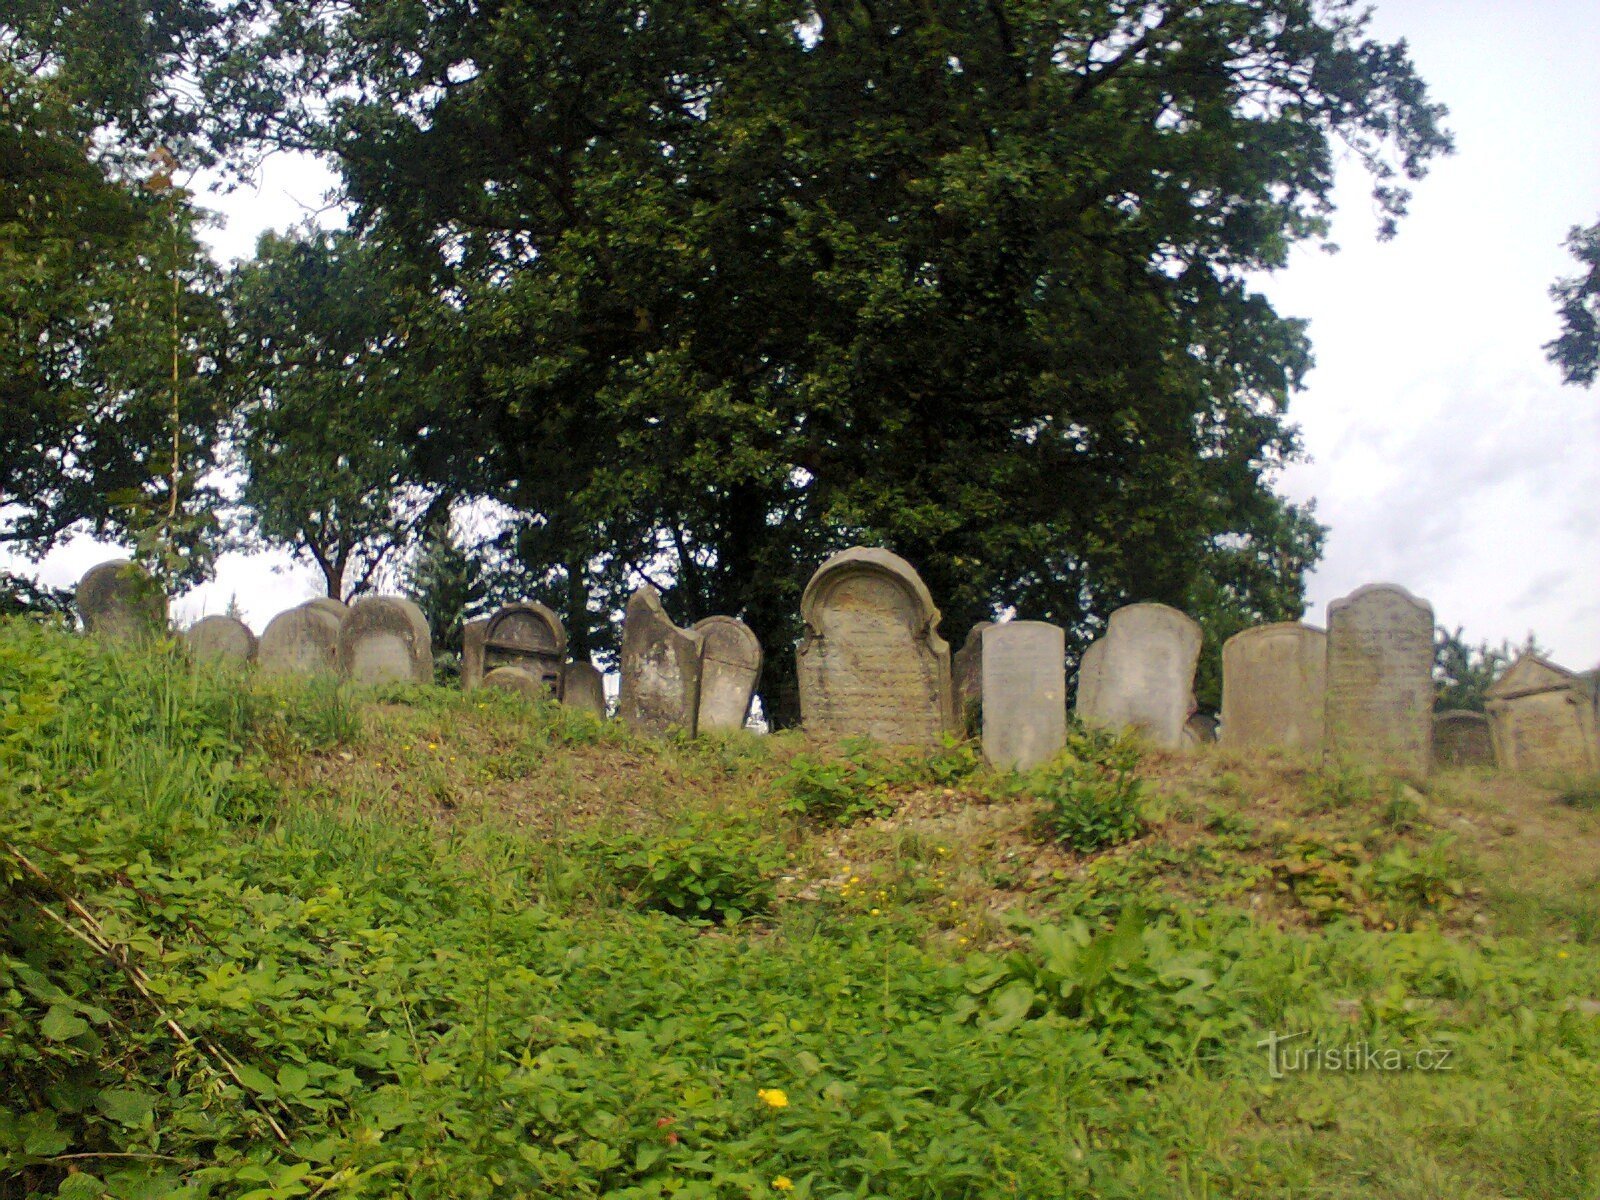 Sobědruhy judiska kyrkogården